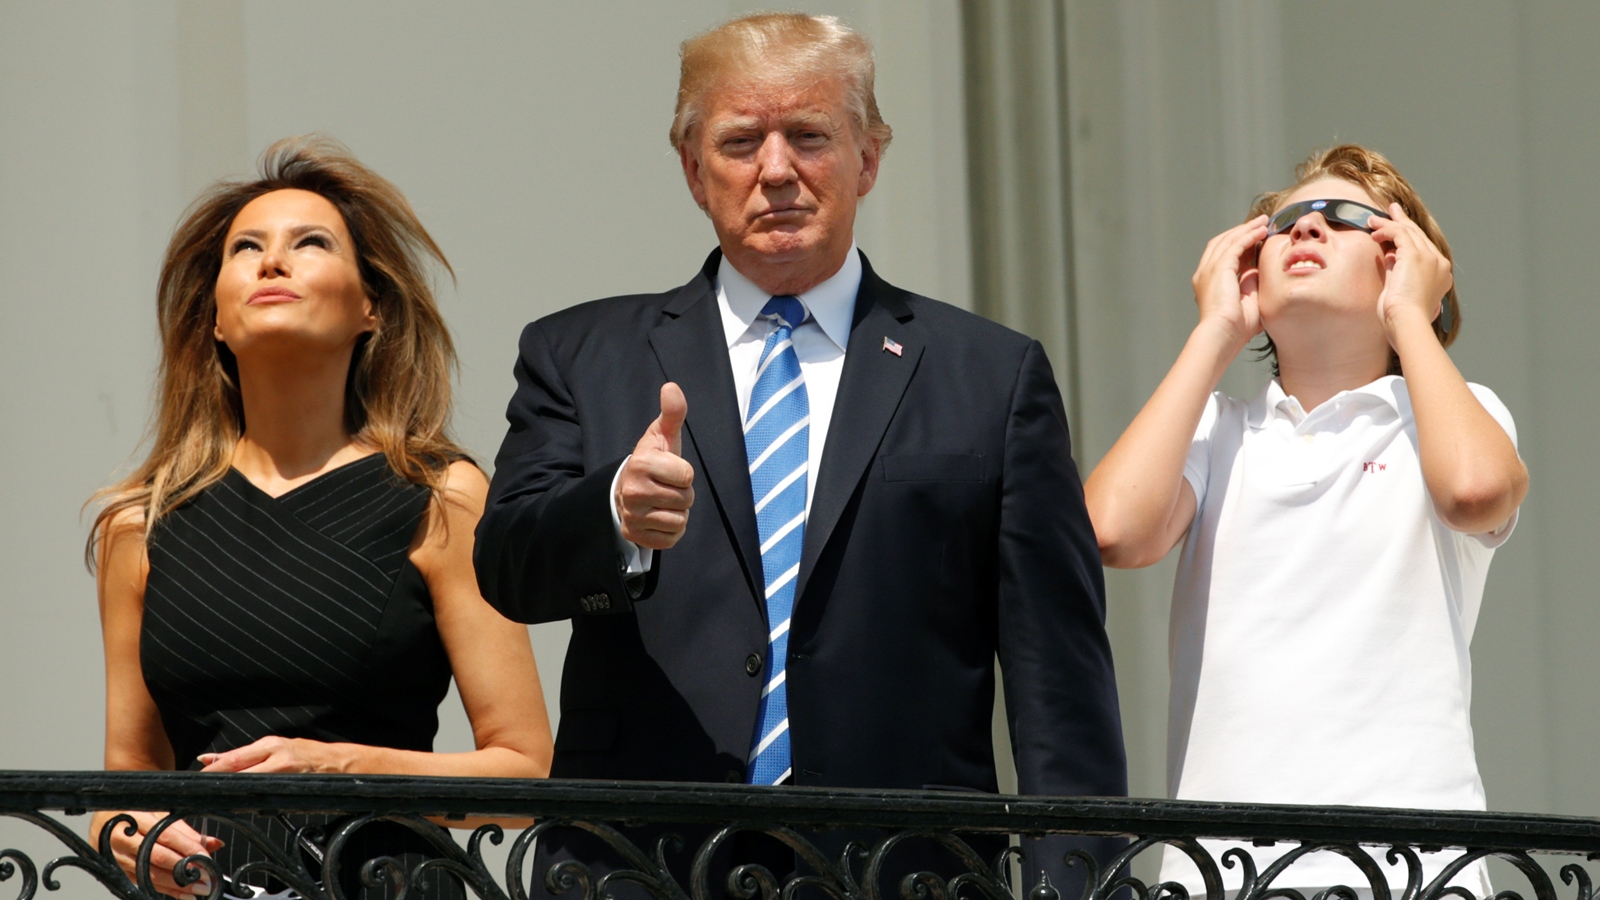 Gaya Trump Melihat Gerhana Matahari Total di Balkon Gedung Putih